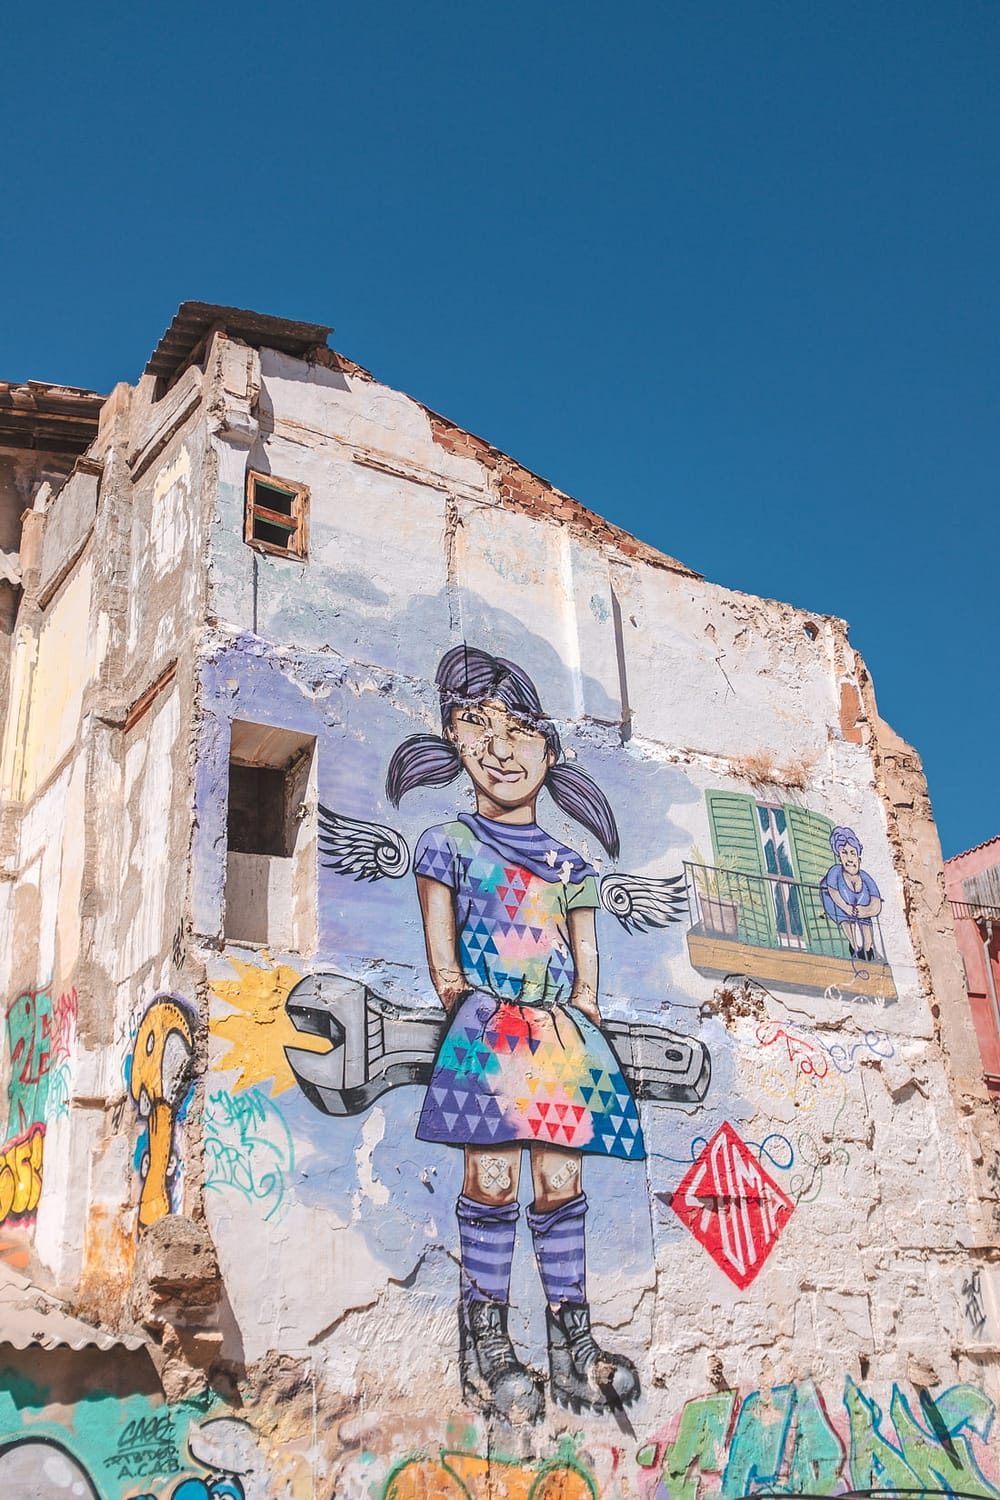 Street art in Palma